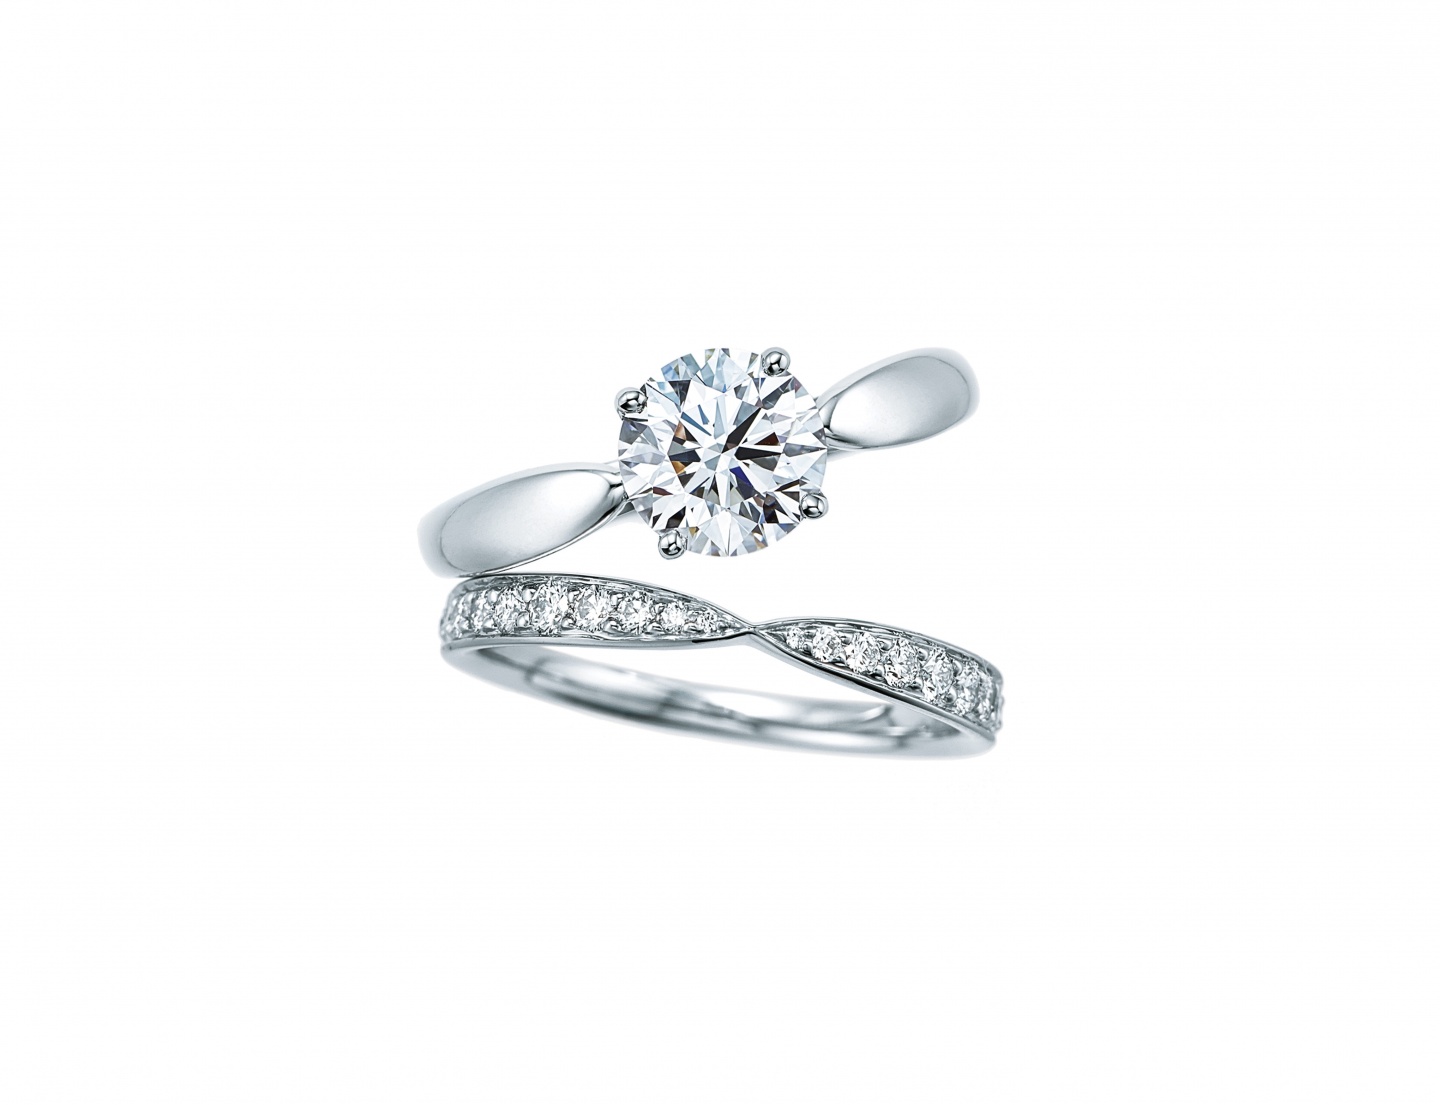 Tiffany 婚約指輪 結婚指輪